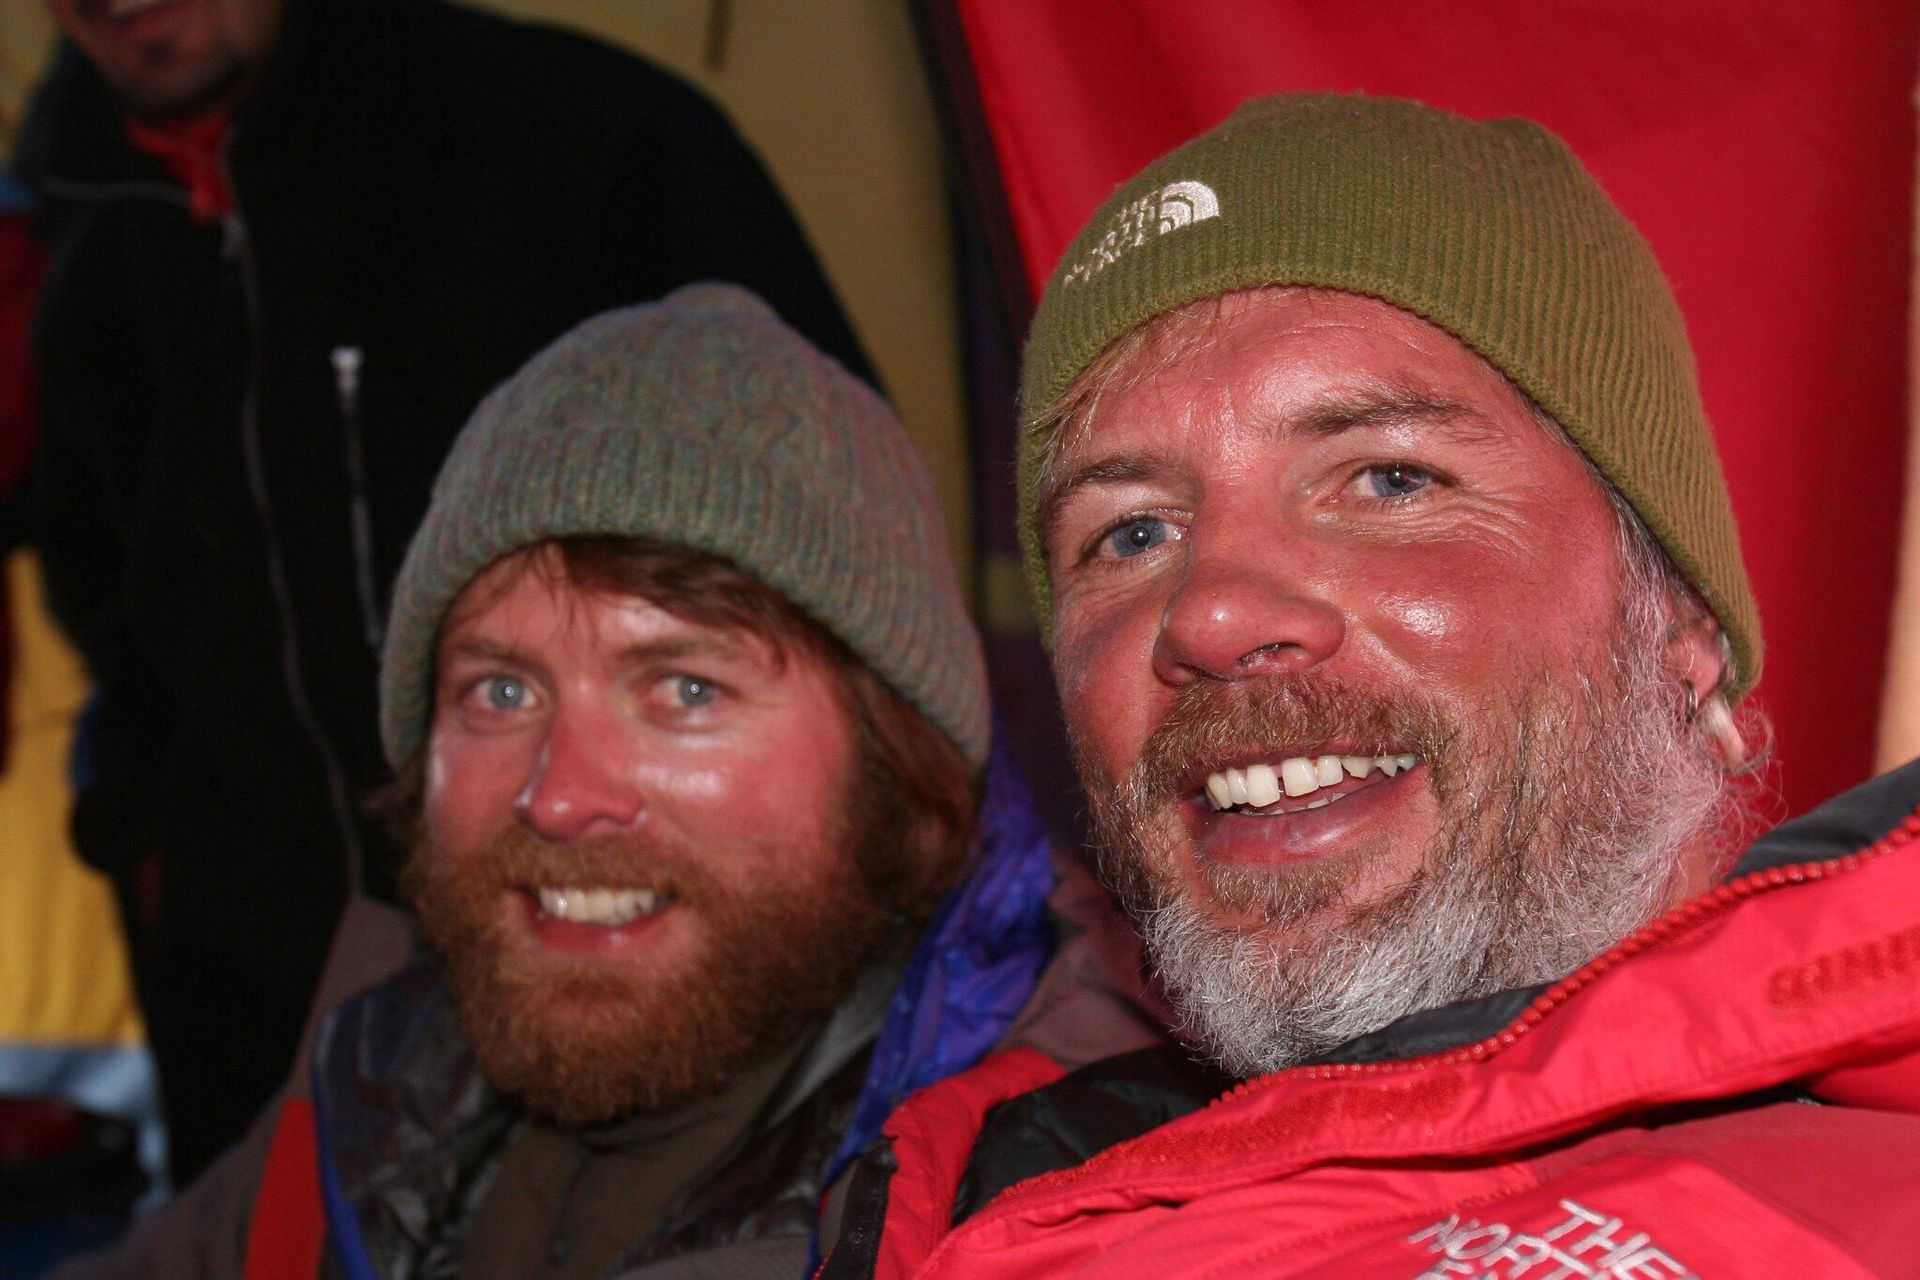 Wonder - Gerard en Wilco beklommen samen de K2